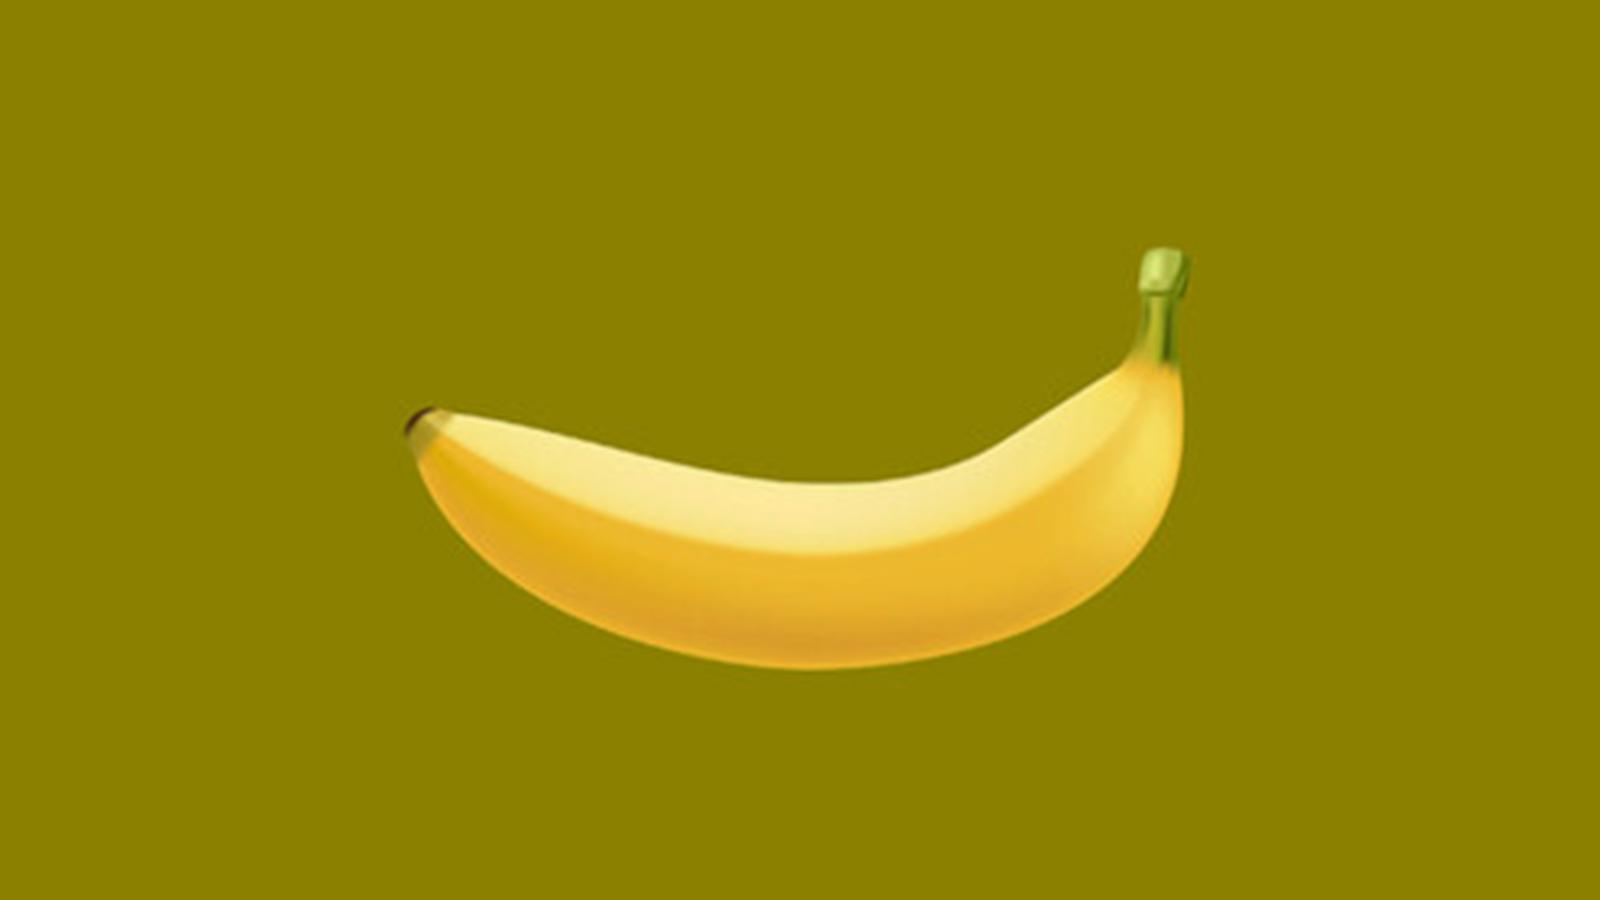 Тысячи людей загружают Steam, чтобы нажать на изображение банана в «Банане».